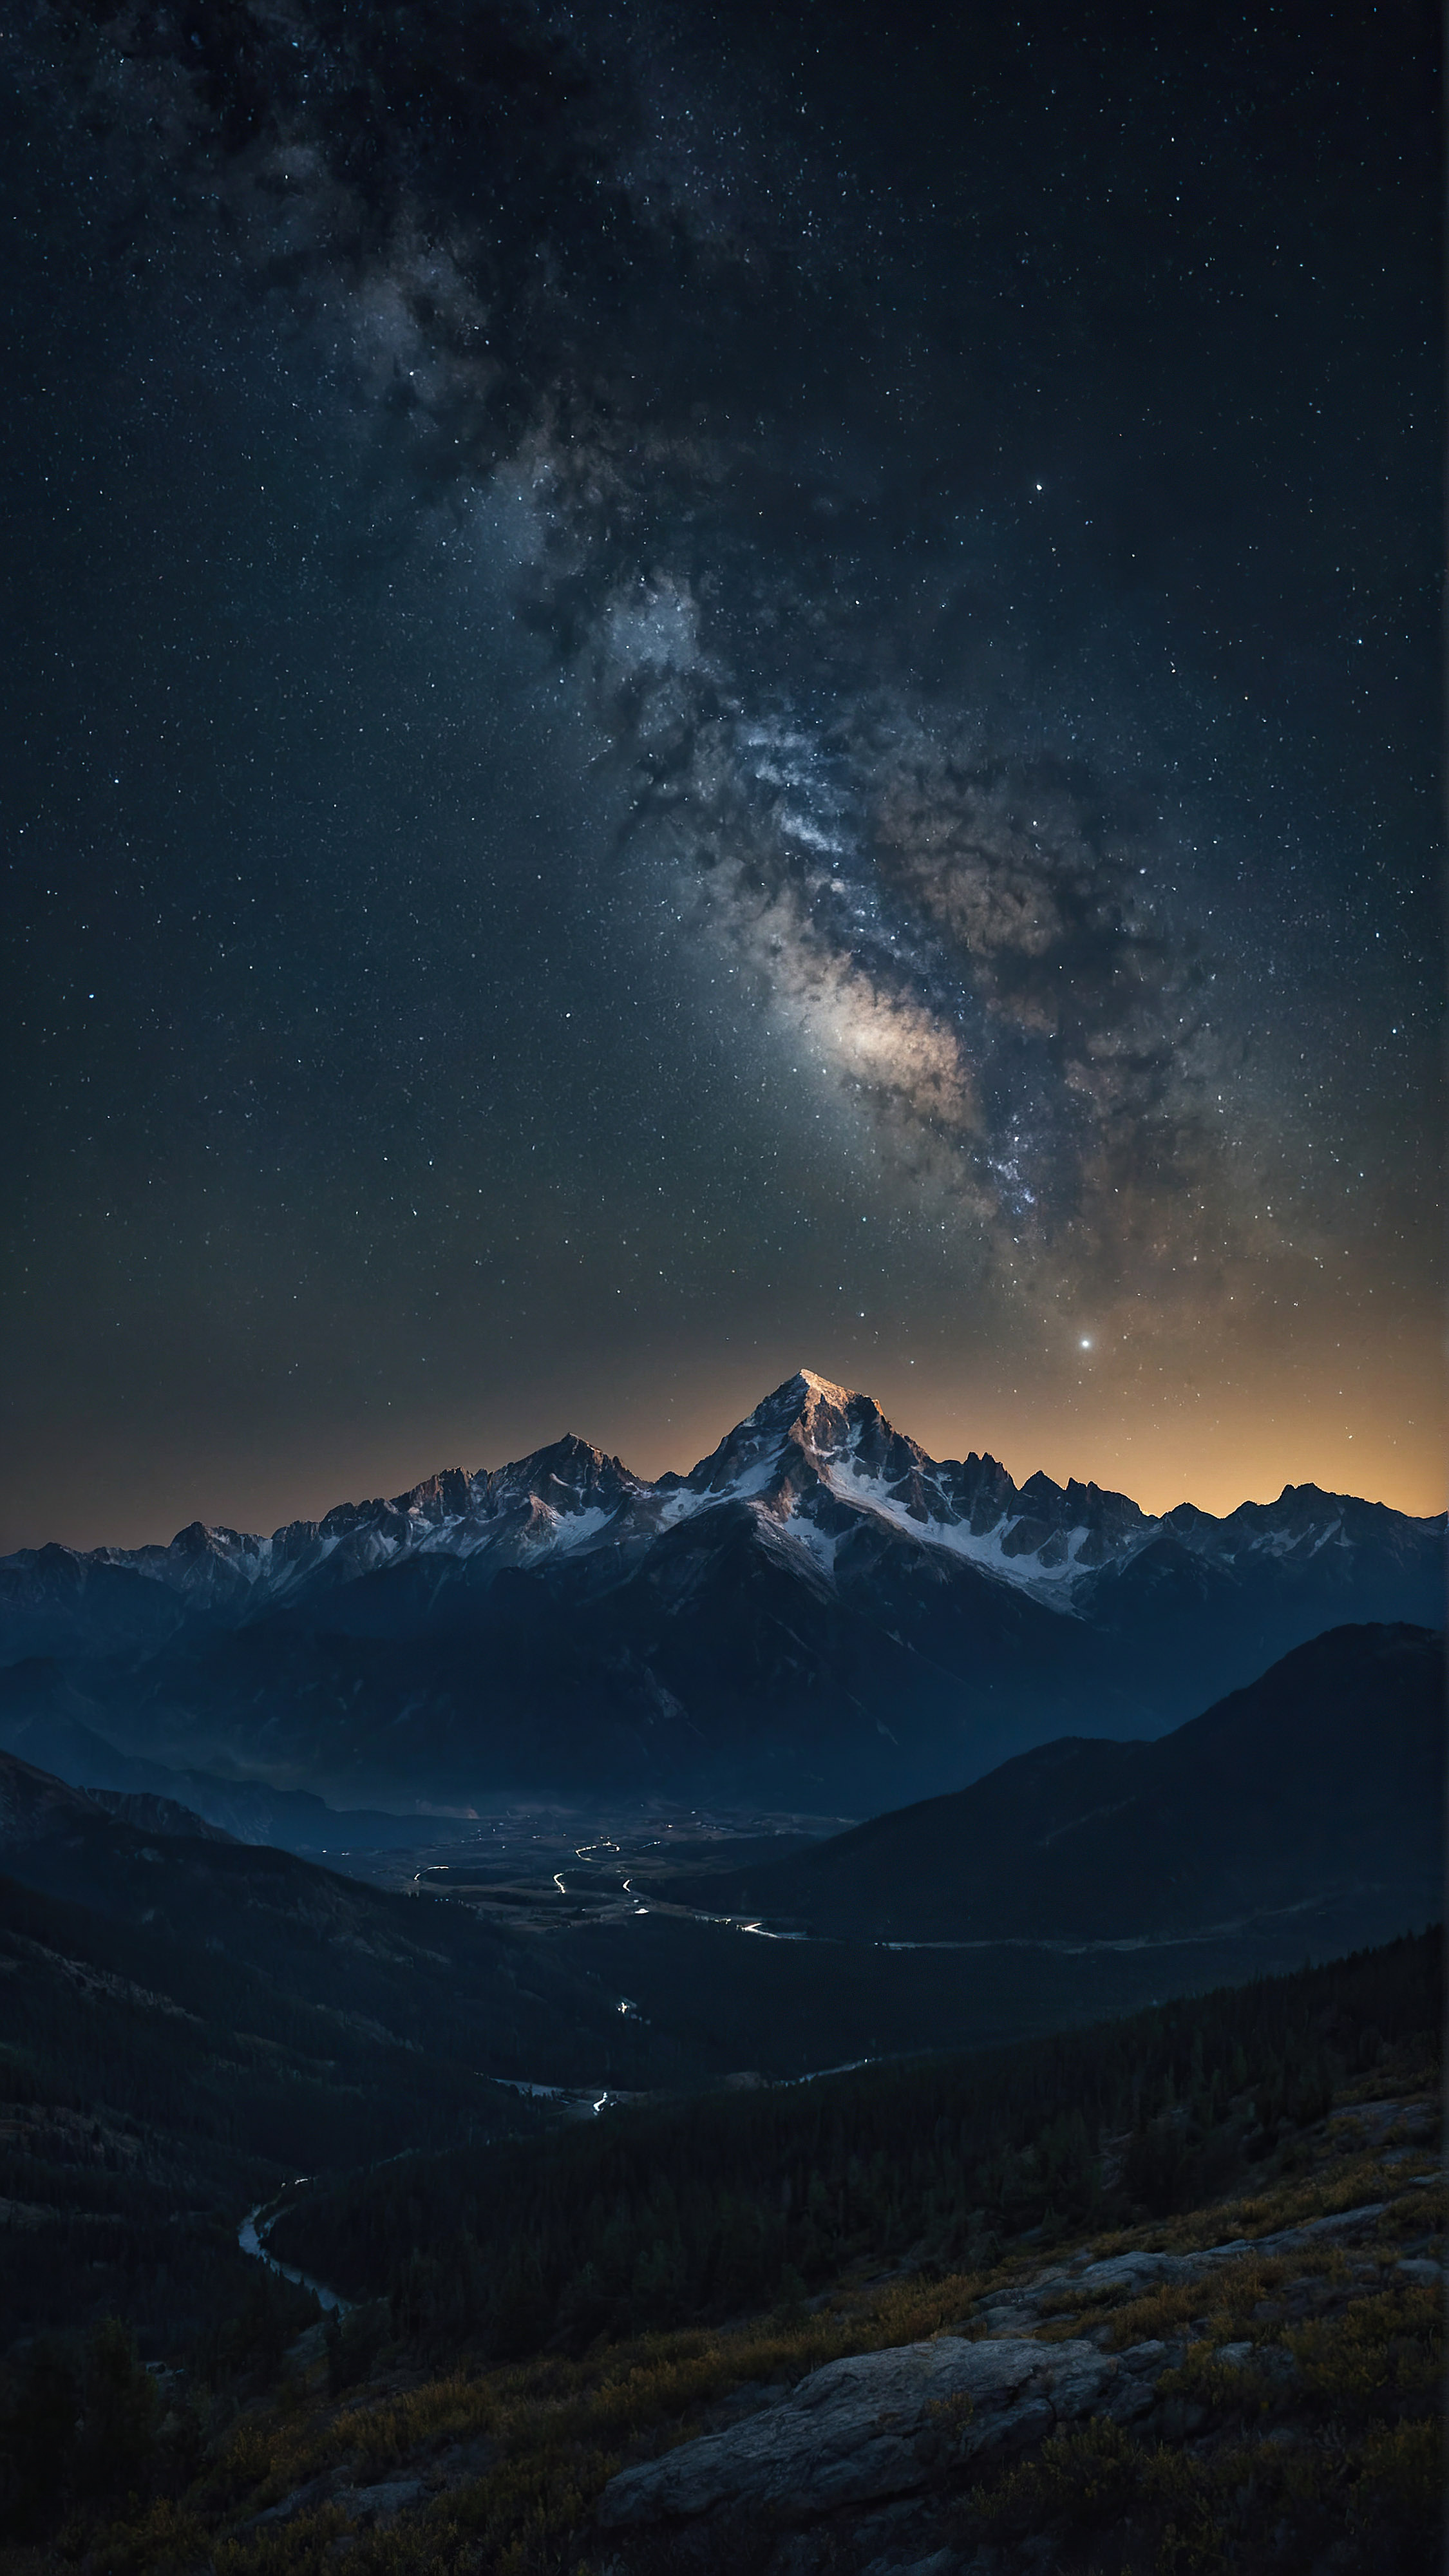 Téléchargez gratuitement ce fond d'écran iPhone style en 4K, capturant une scène nocturne à couper le souffle d'une chaîne de montagnes accidentée sous un ciel étoilé, avec d'innombrables étoiles ajoutant à l'atmosphère sereine et majestueuse du paysage.